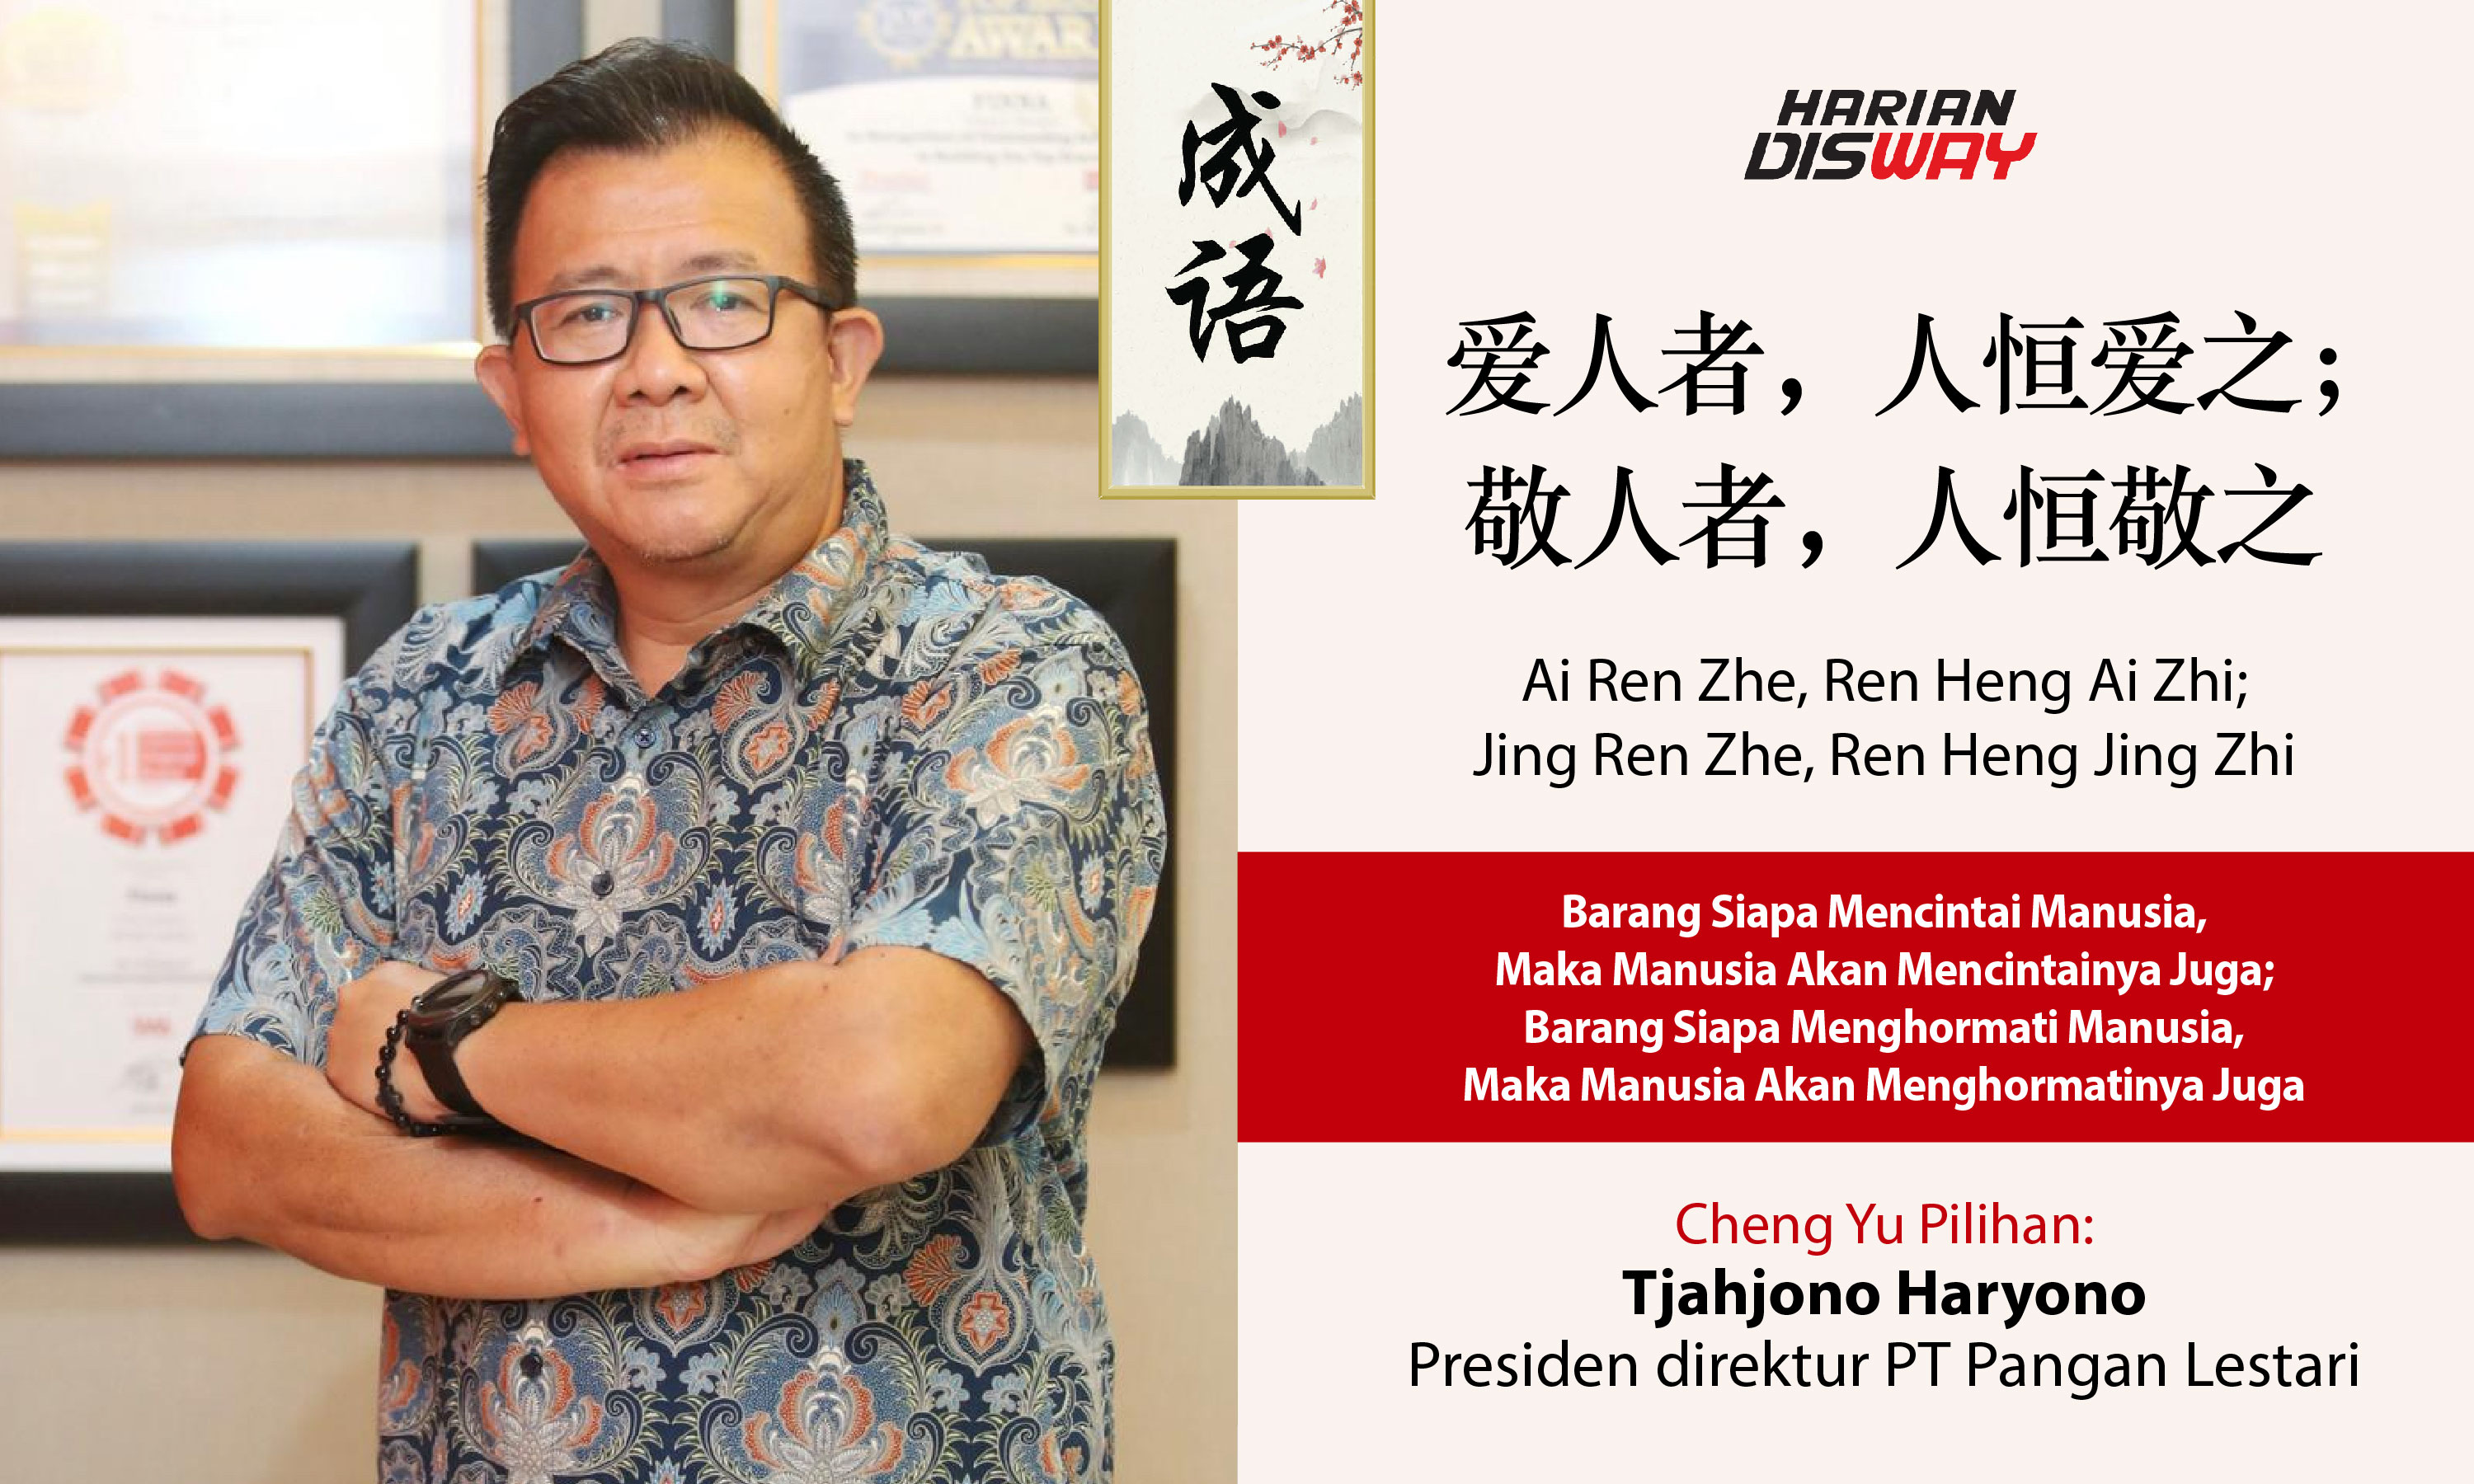 Cheng Yu Pilihan Presiden Direktur PT Pangan Lestari Tjahjono Haryono: Ai Ren Zhe, Ren Heng Ai Zhi; Jing Ren Zhe, Ren Heng Jing Zhi